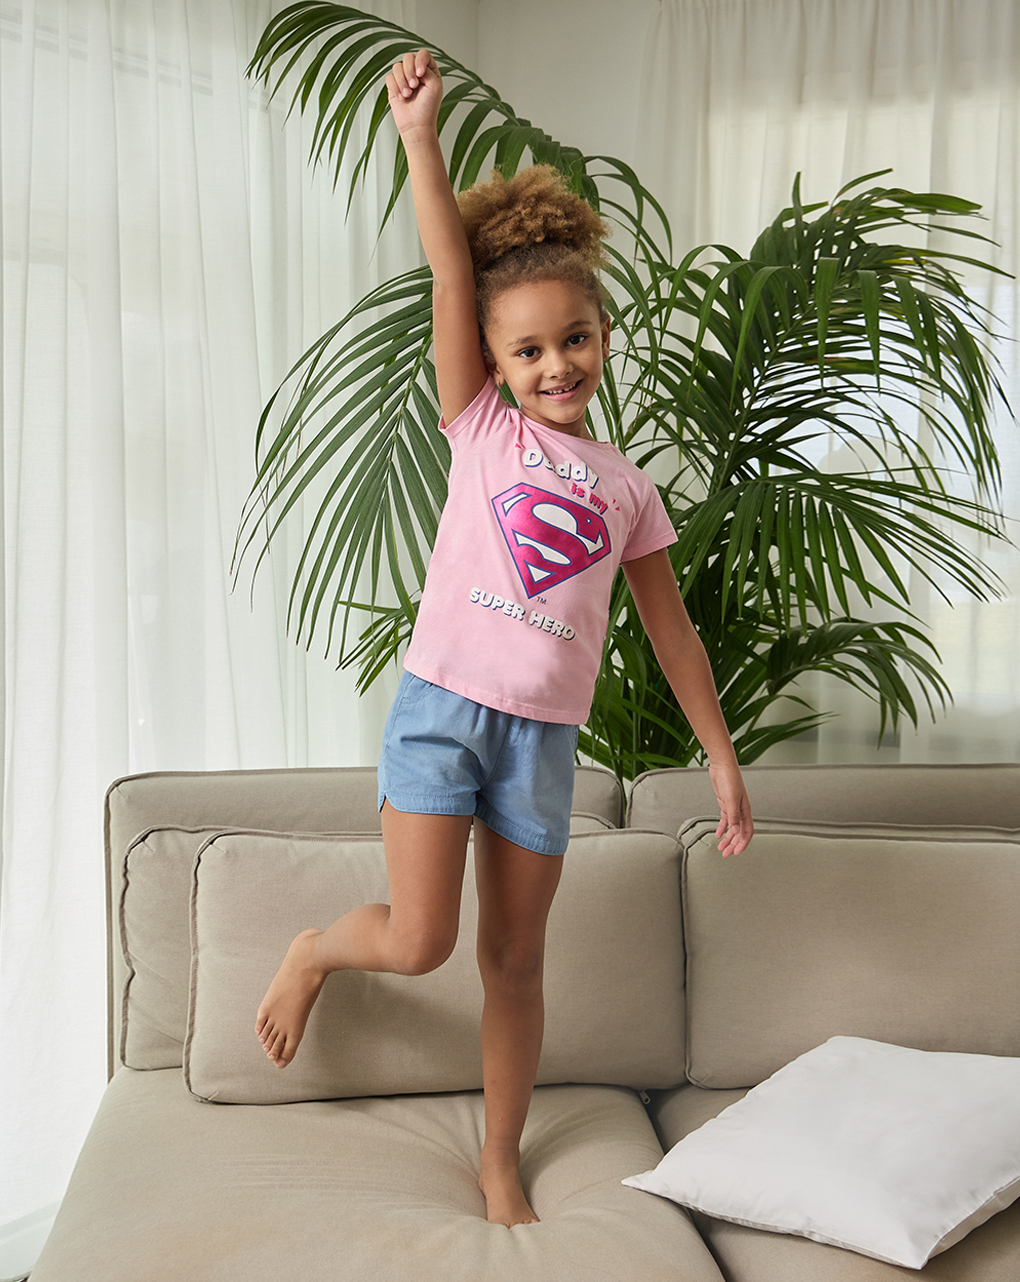 T-shirt 100% algodão para raparigas "dad is my super hero" - Prénatal